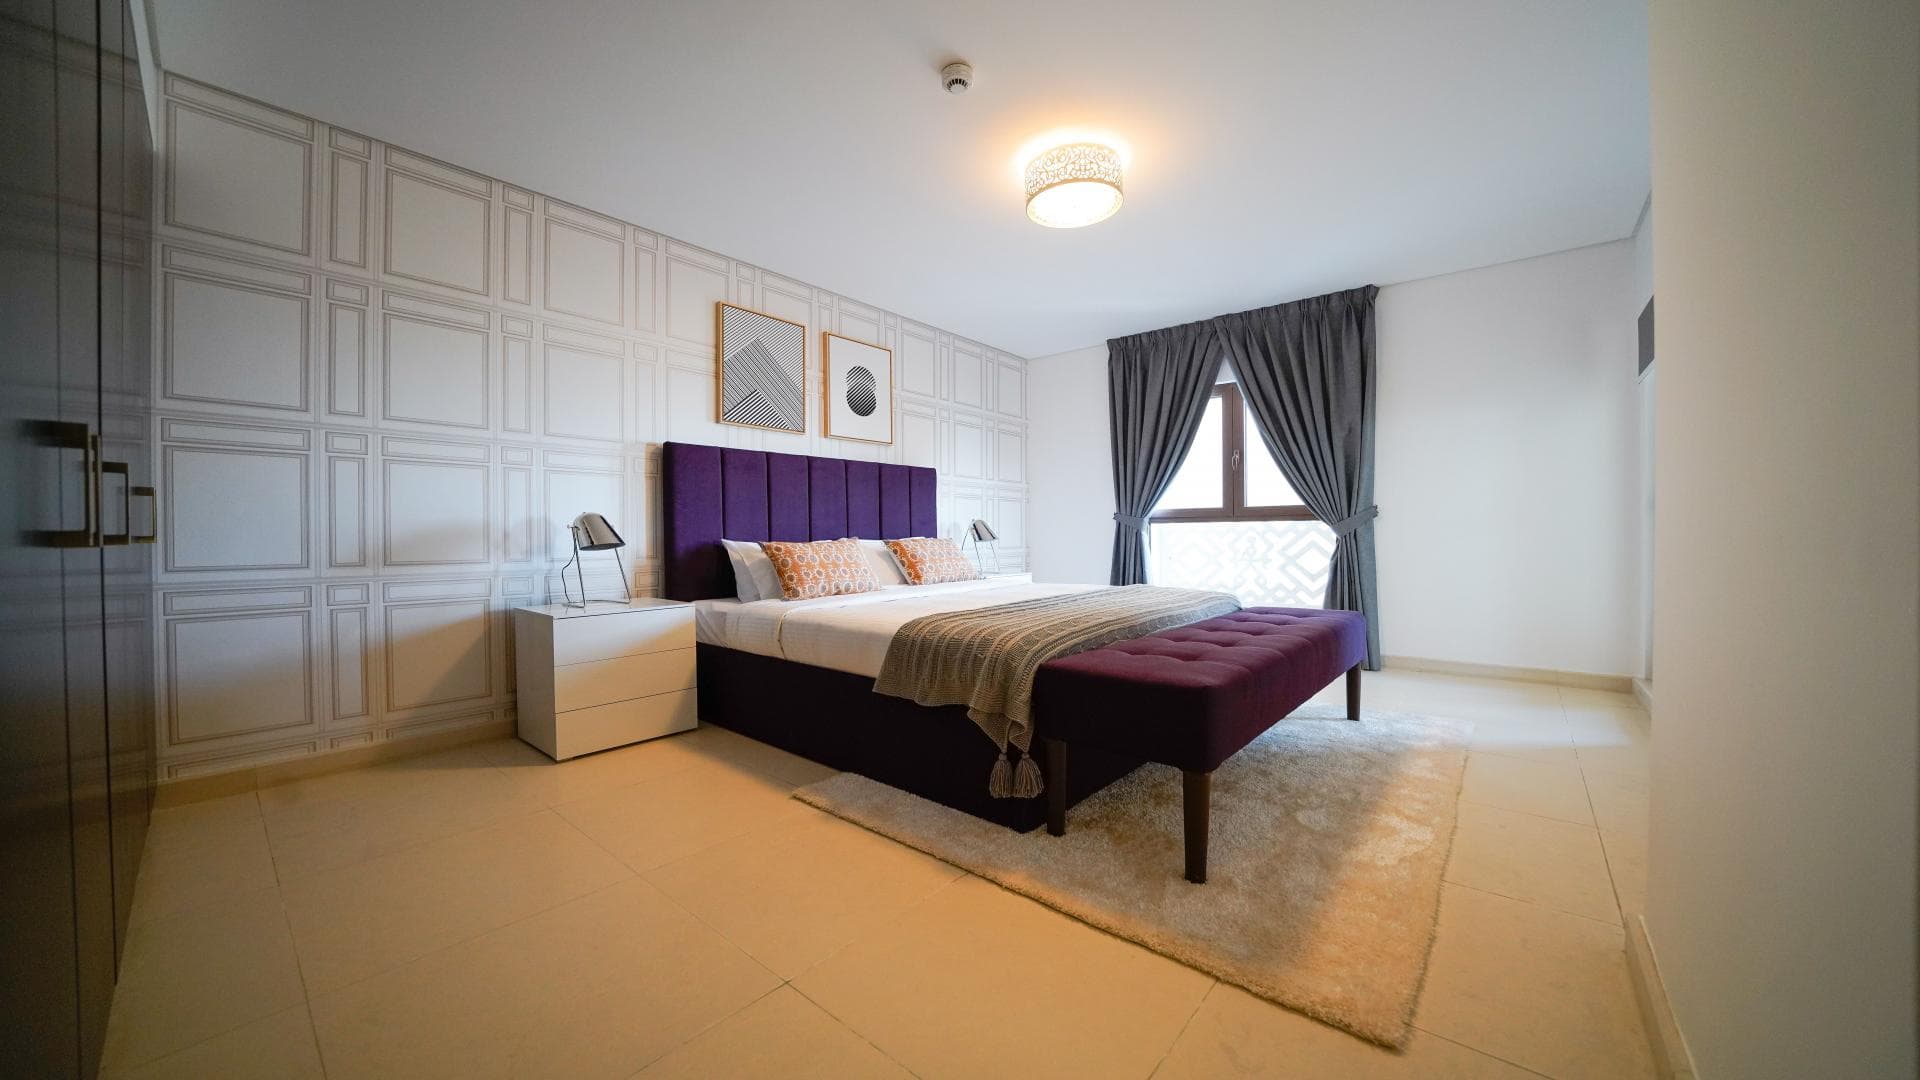 4 Bedroom Apartment For Sale Grand Residence Lp38382 322e55acebe4c200.jpg